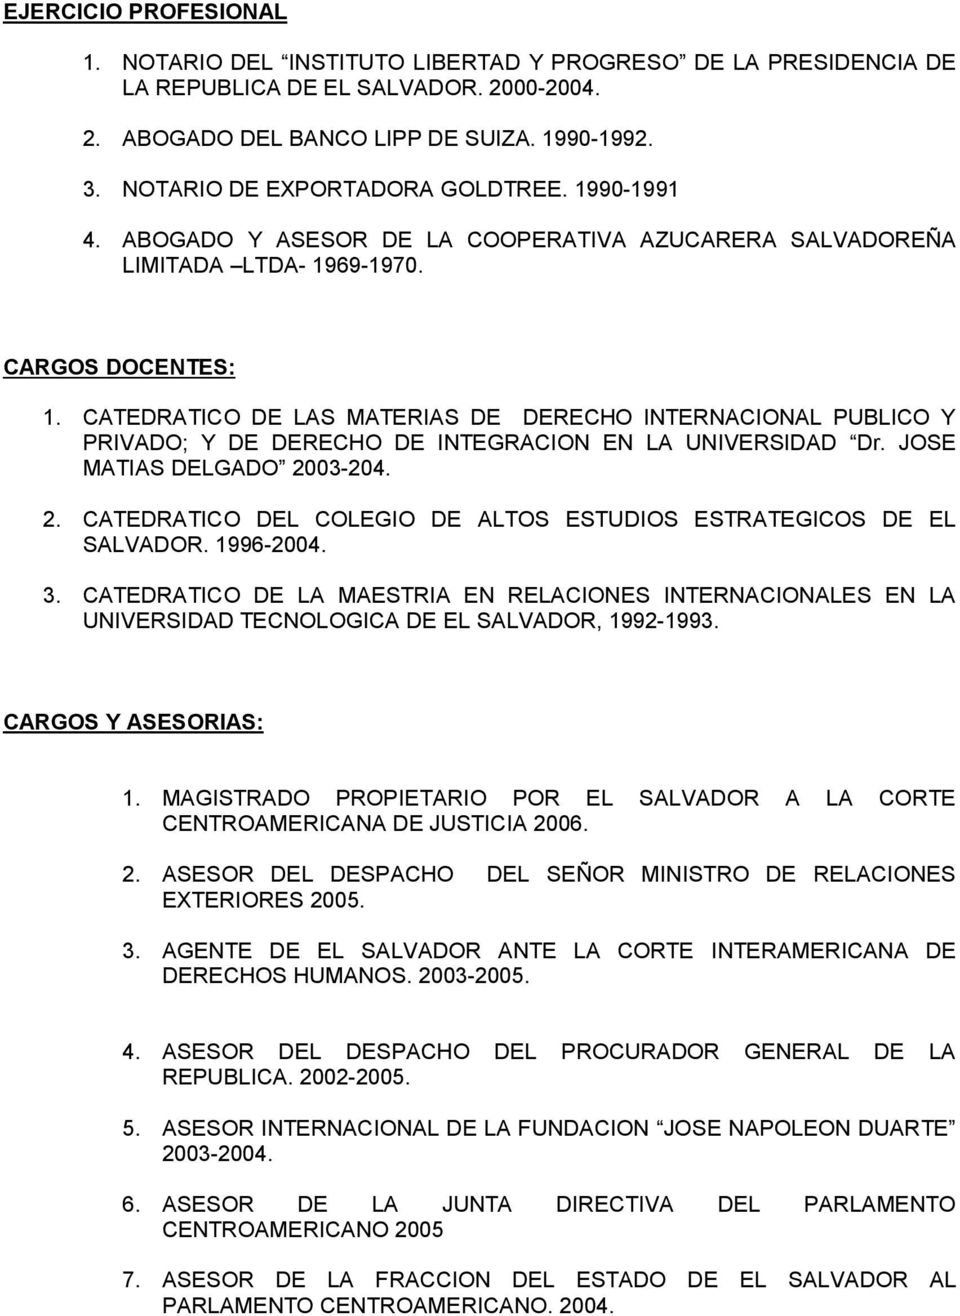 CATEDRATICO DE LAS MATERIAS DE DERECHO INTERNACIONAL PUBLICO Y PRIVADO; Y DE DERECHO DE INTEGRACION EN LA UNIVERSIDAD Dr. JOSE MATIAS DELGADO 20